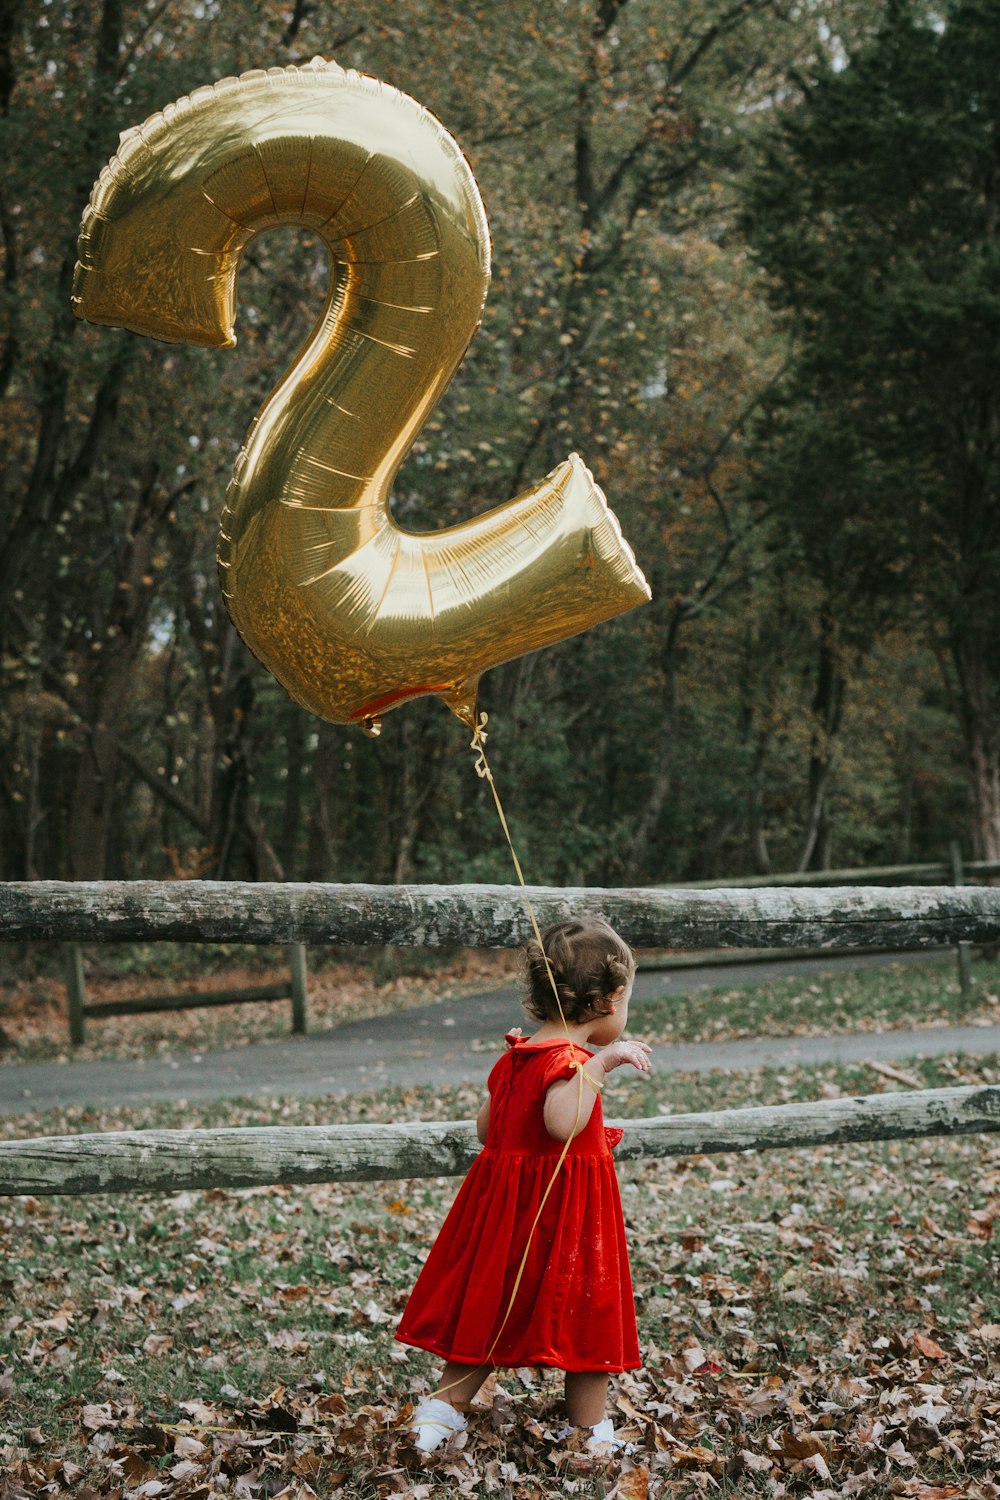 金のハート型の風船を持っている赤いドレスの女の子